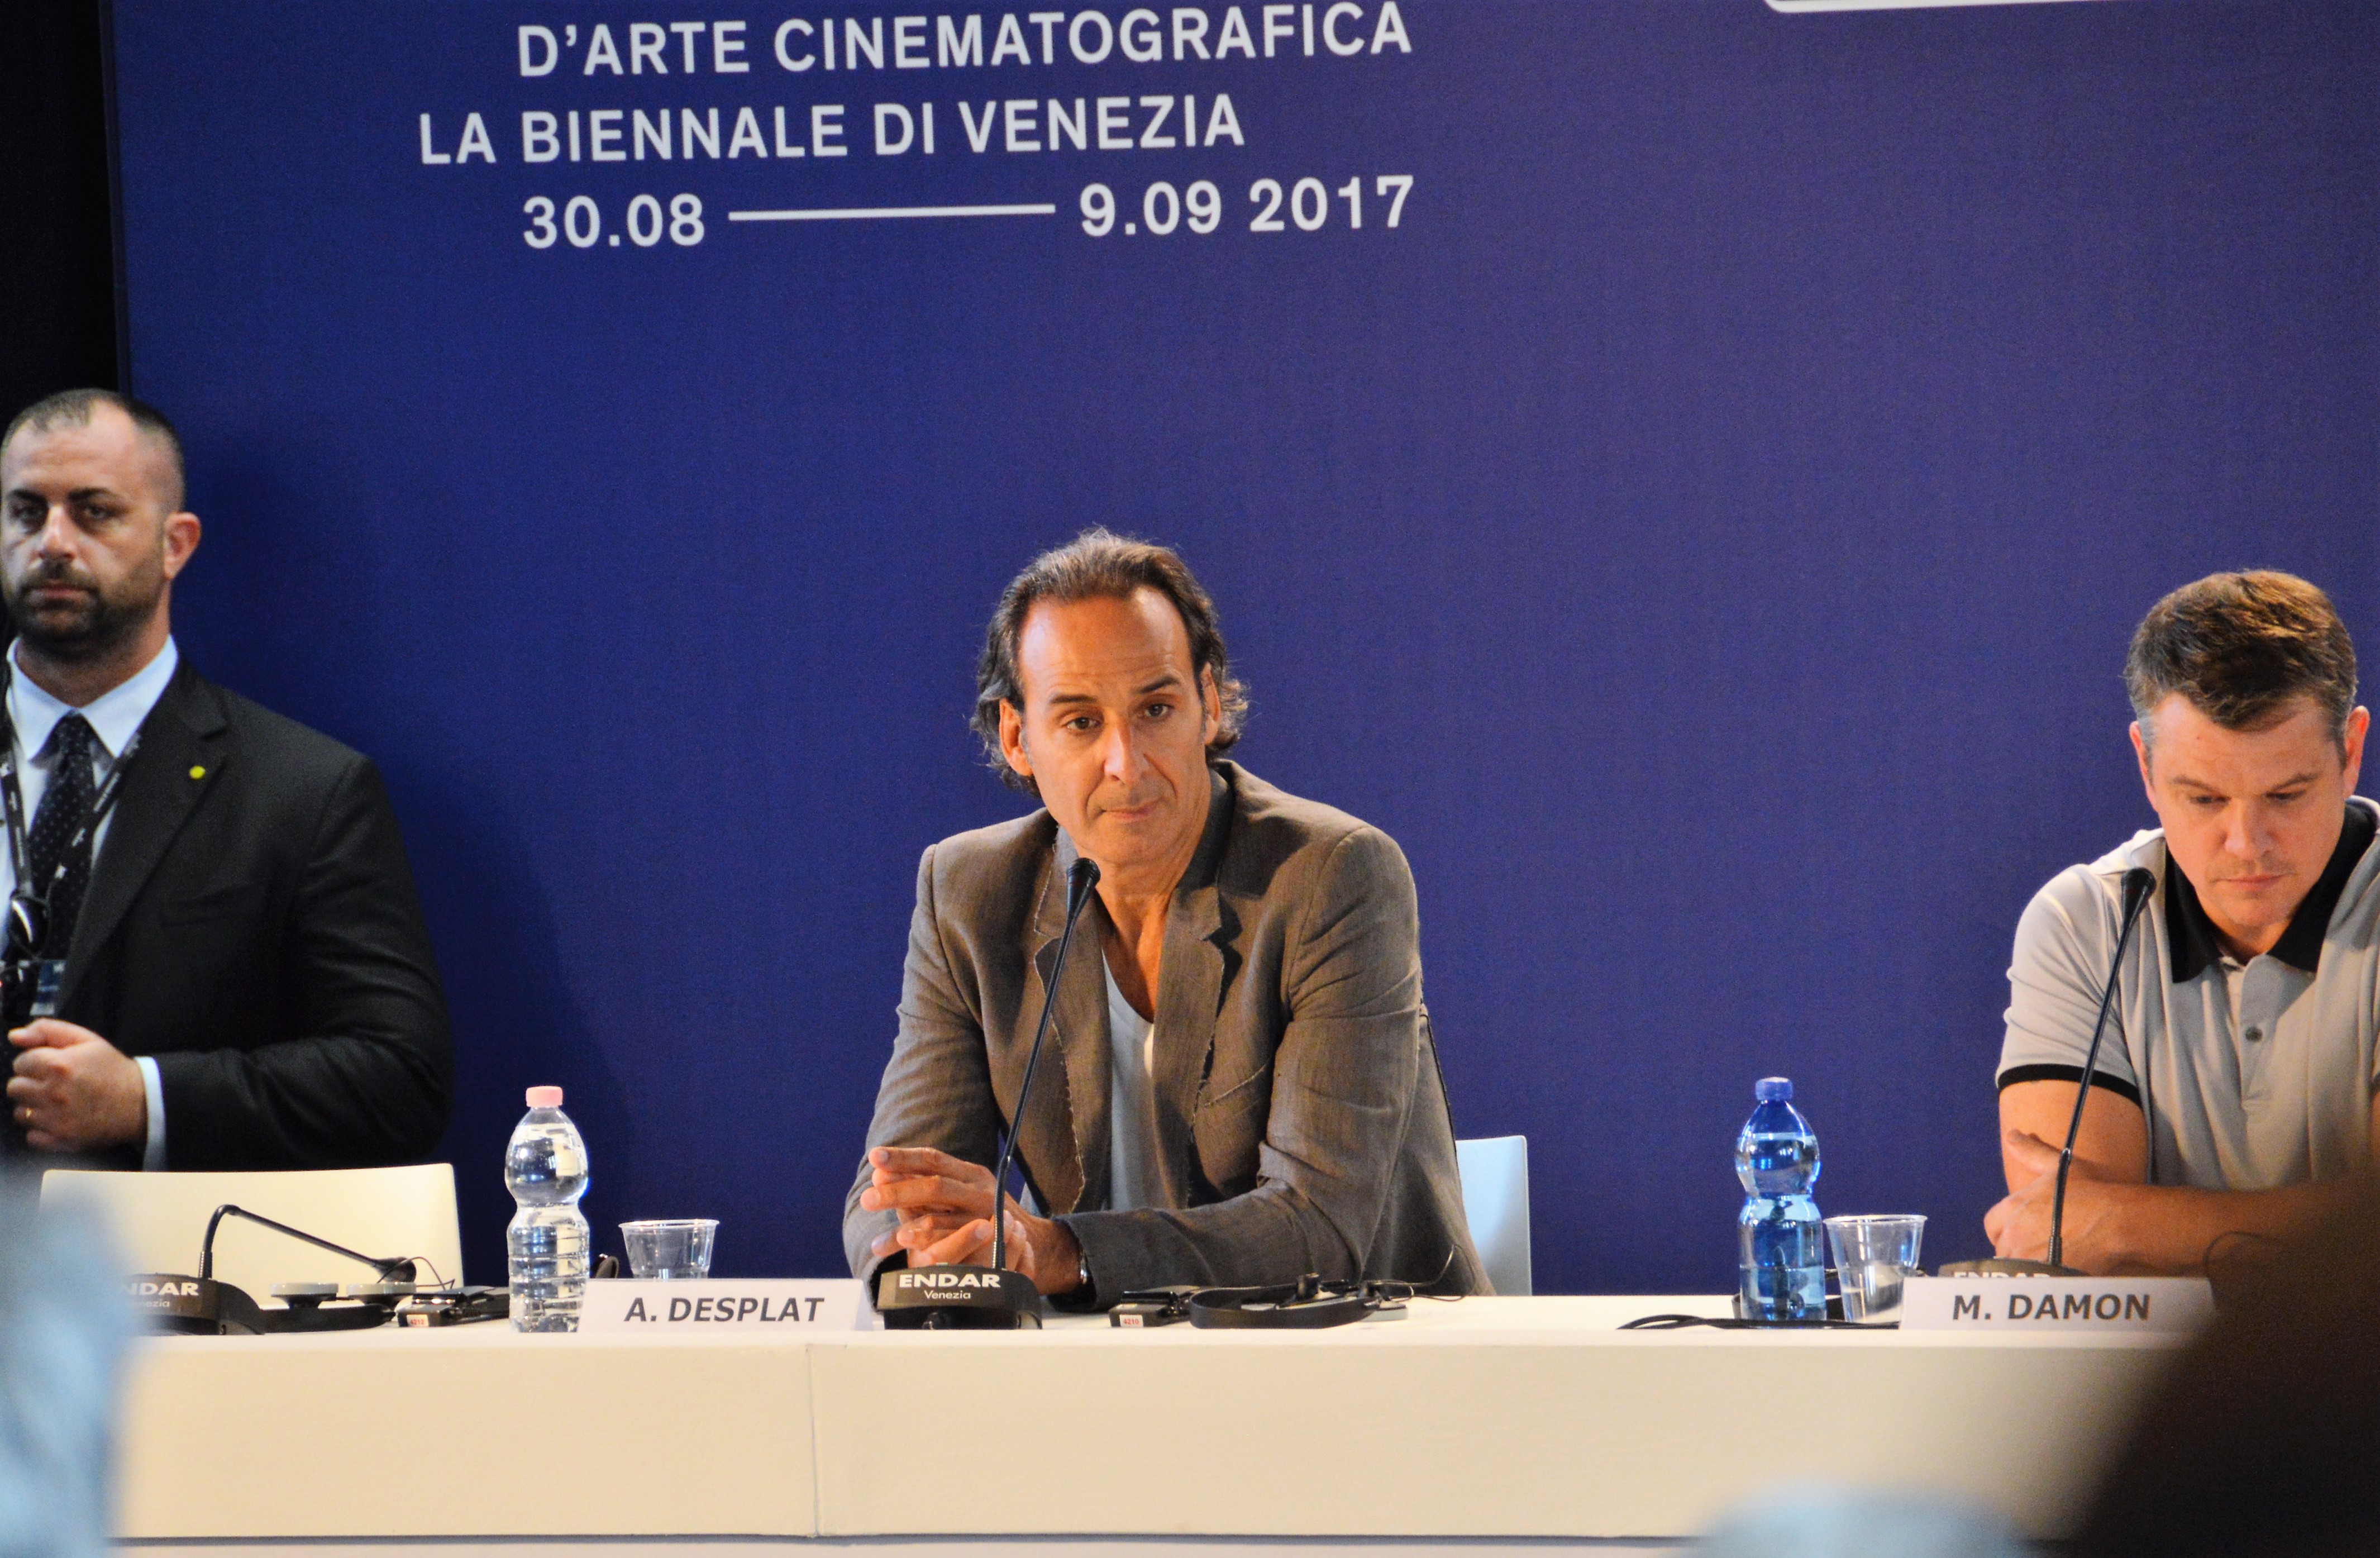 24 - Il compositore Alexandre Desplat che ha curato la colonna sonora di due film in concorso, 'The shape of Water' di Guillermo Del Toro e 'Suburbicon' di George Clooney